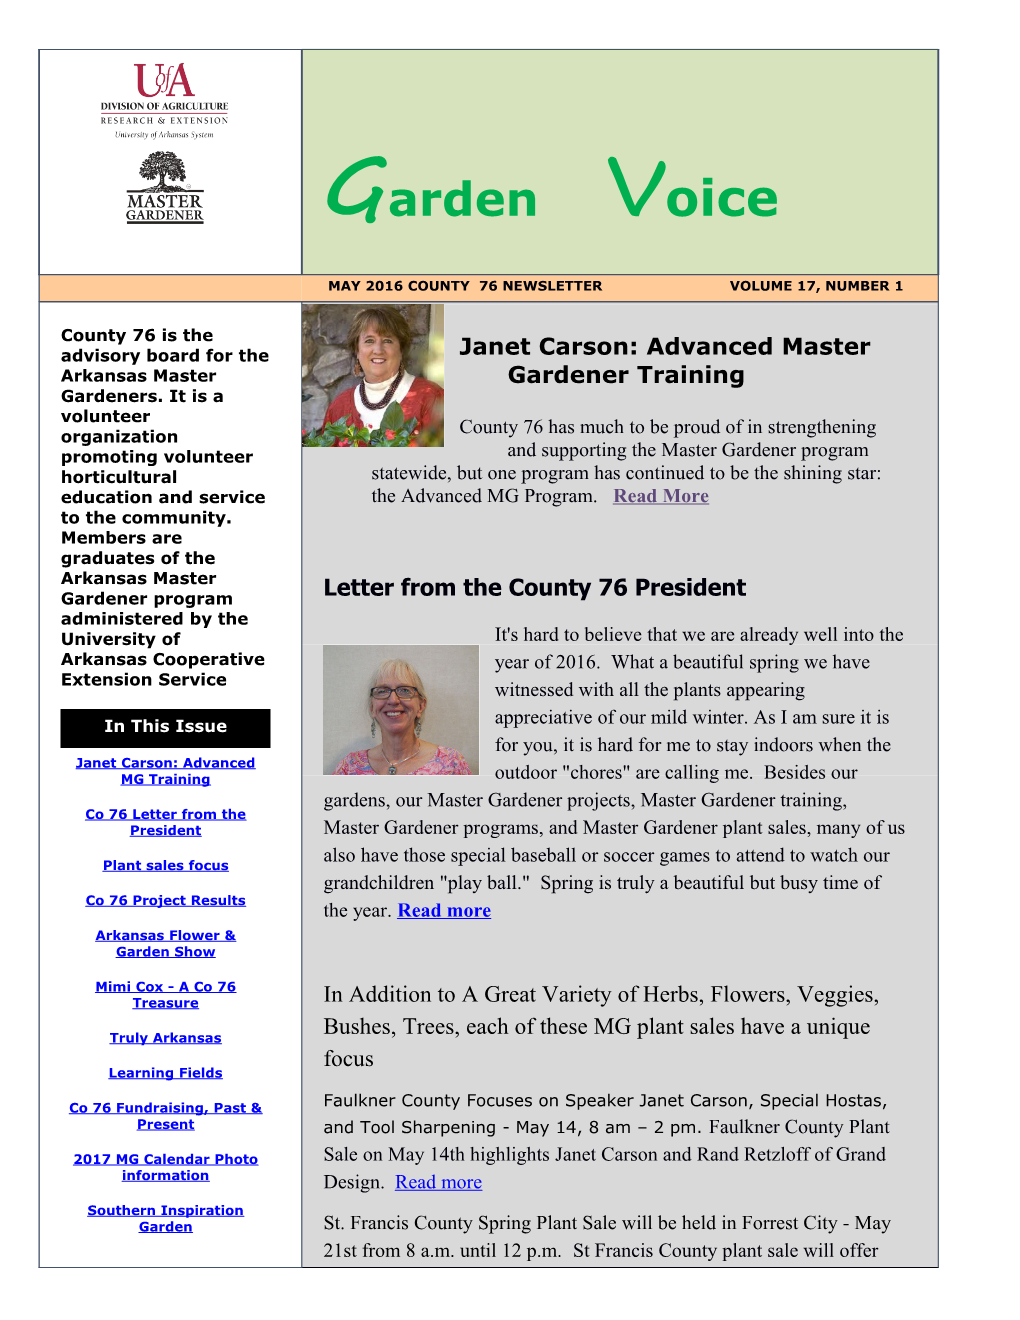 Janet Carson: Advanced Master Gardener Training